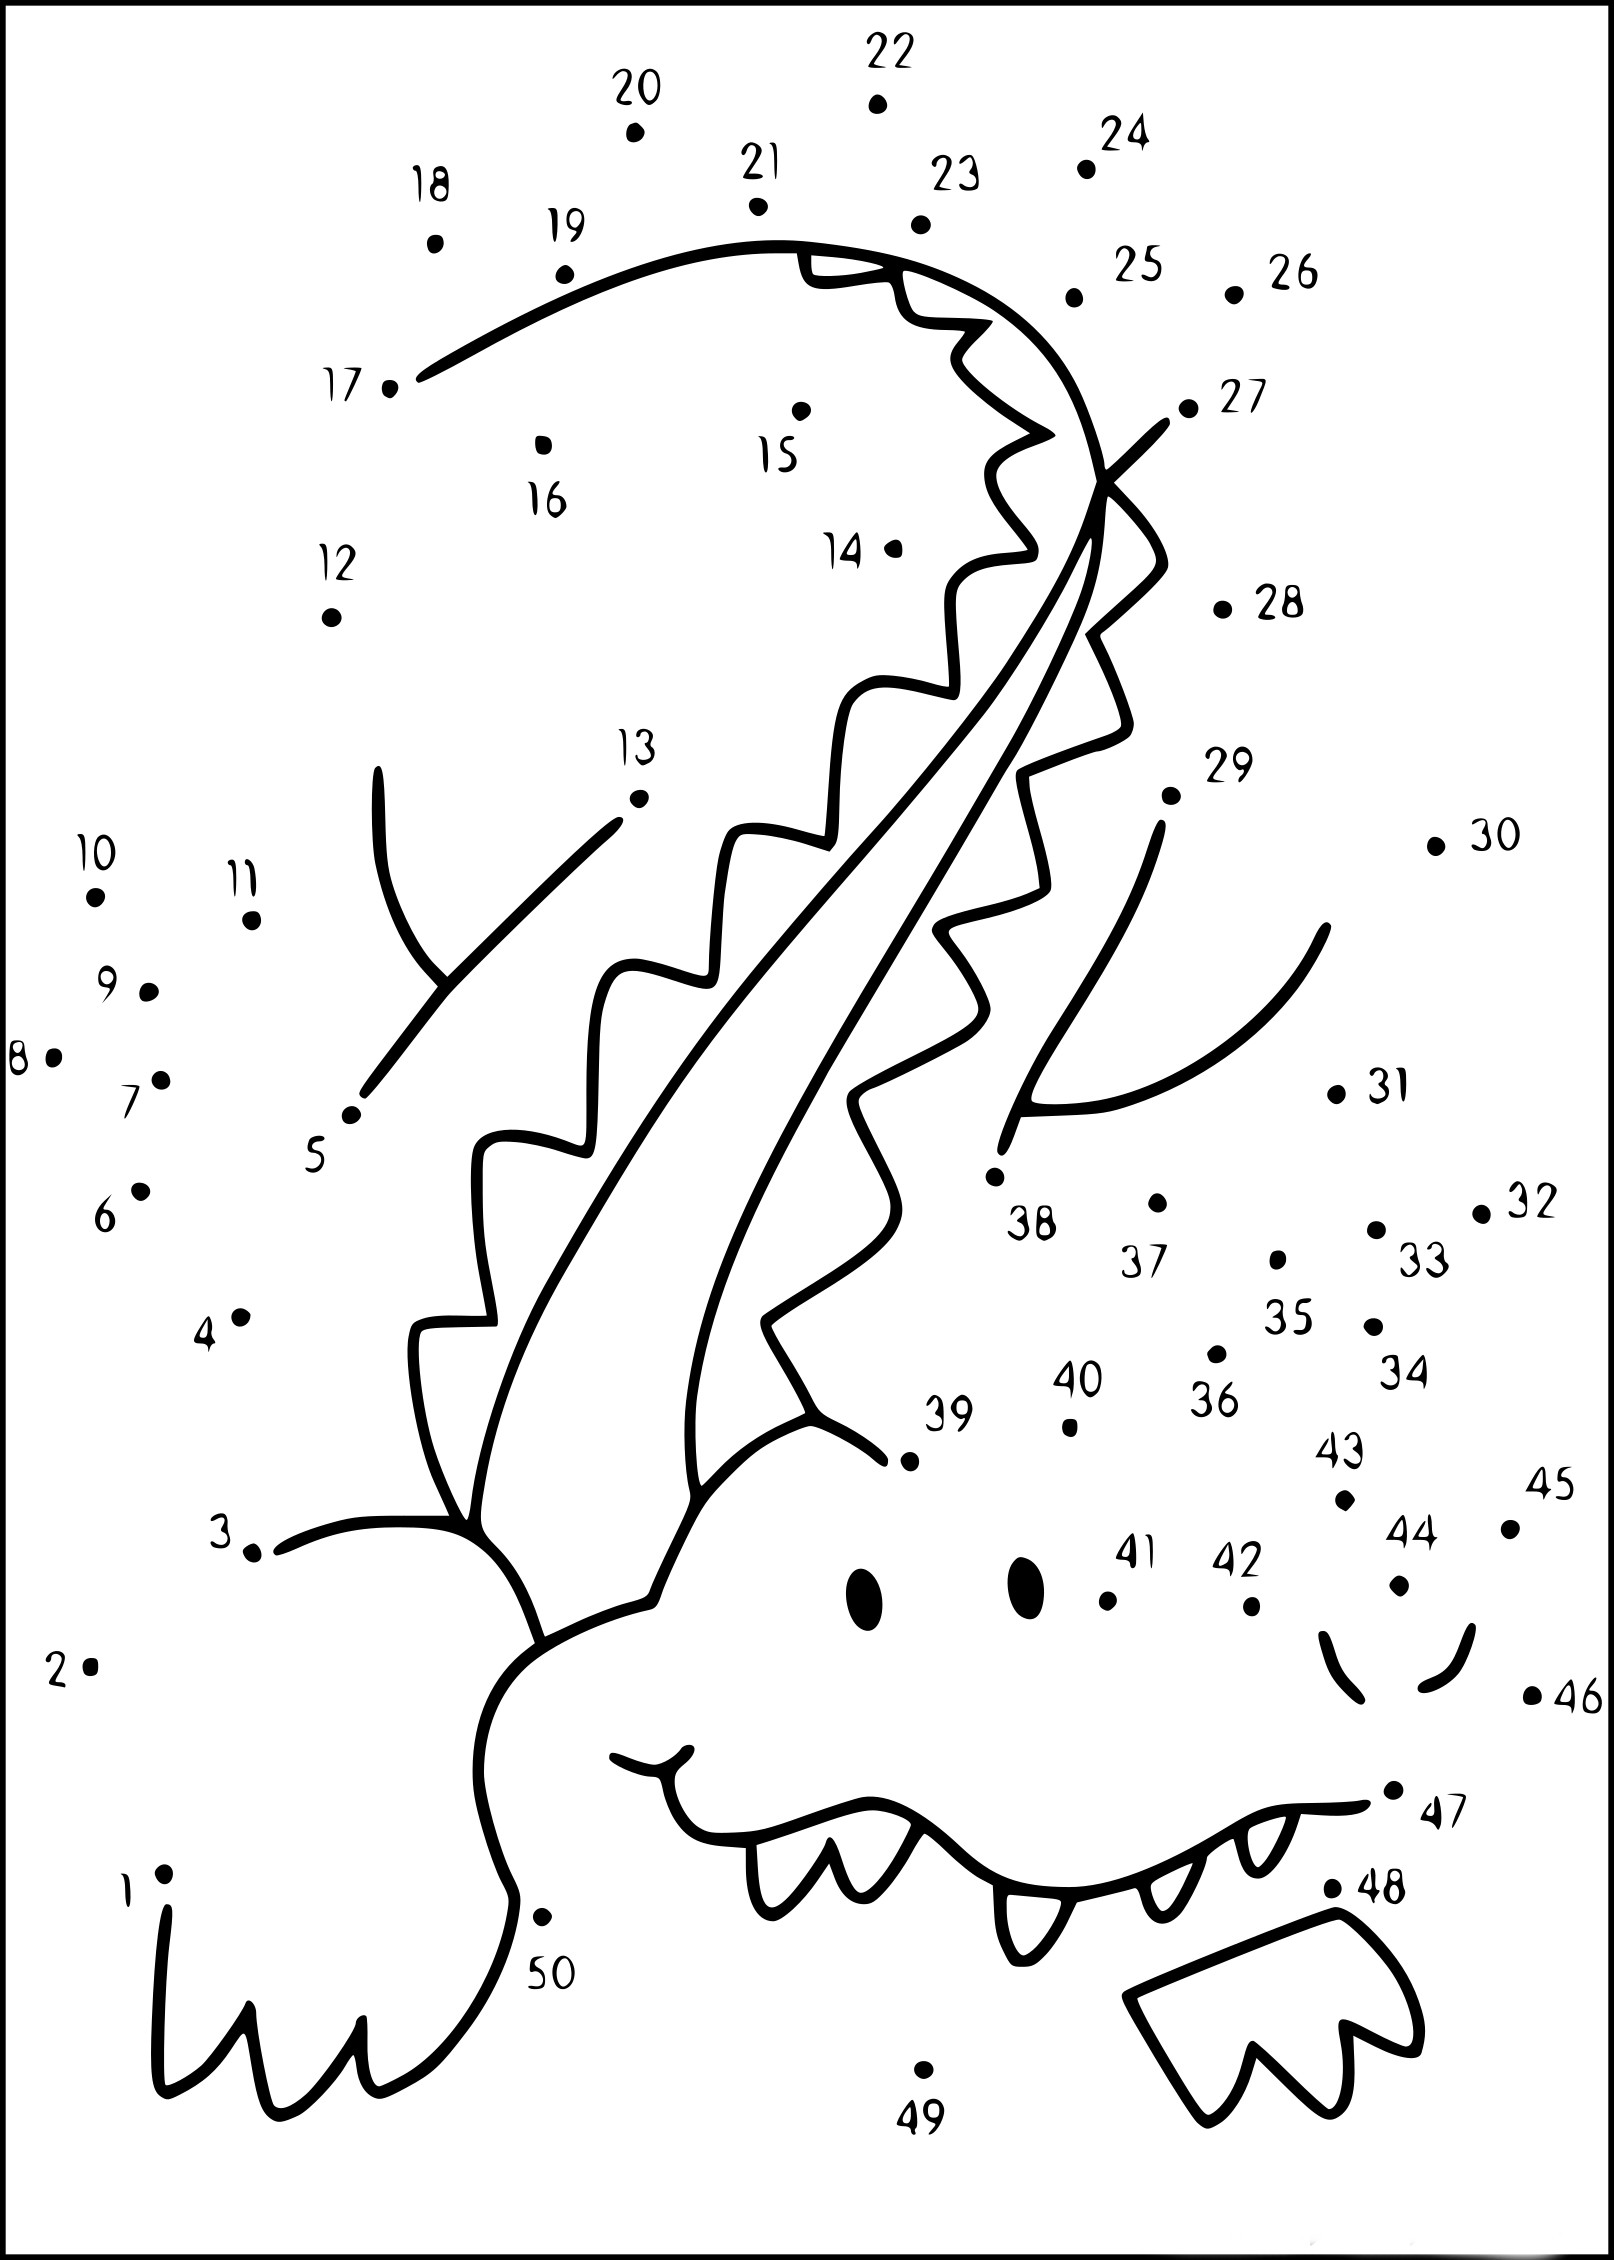 Crocodile Stitch coloring page